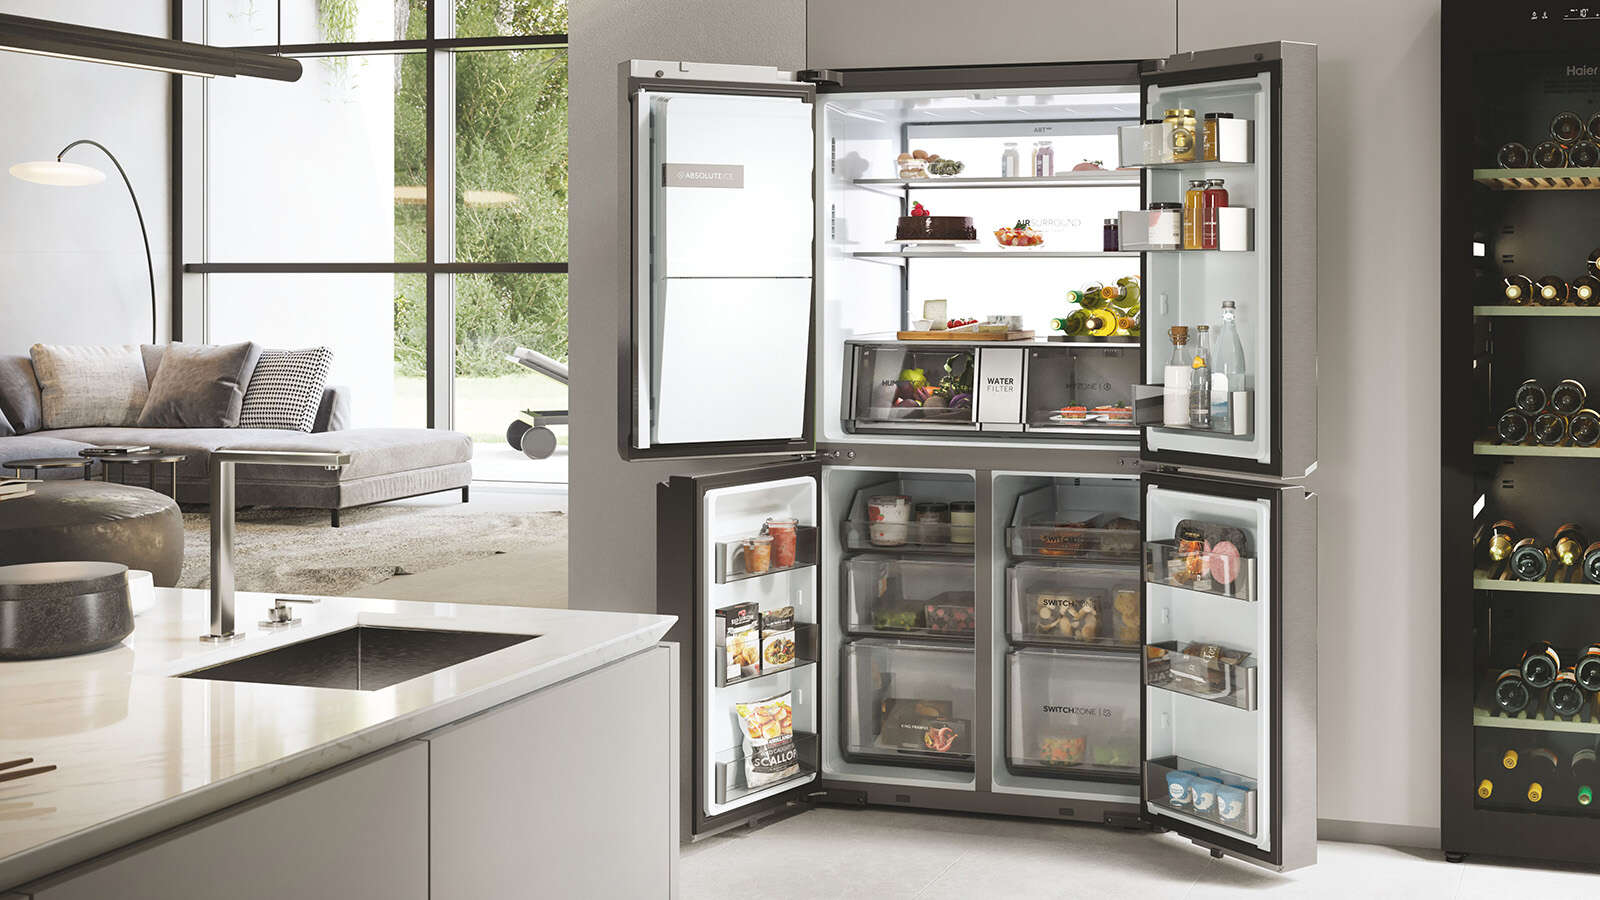 Pourquoi choisir un réfrigérateur américain ?